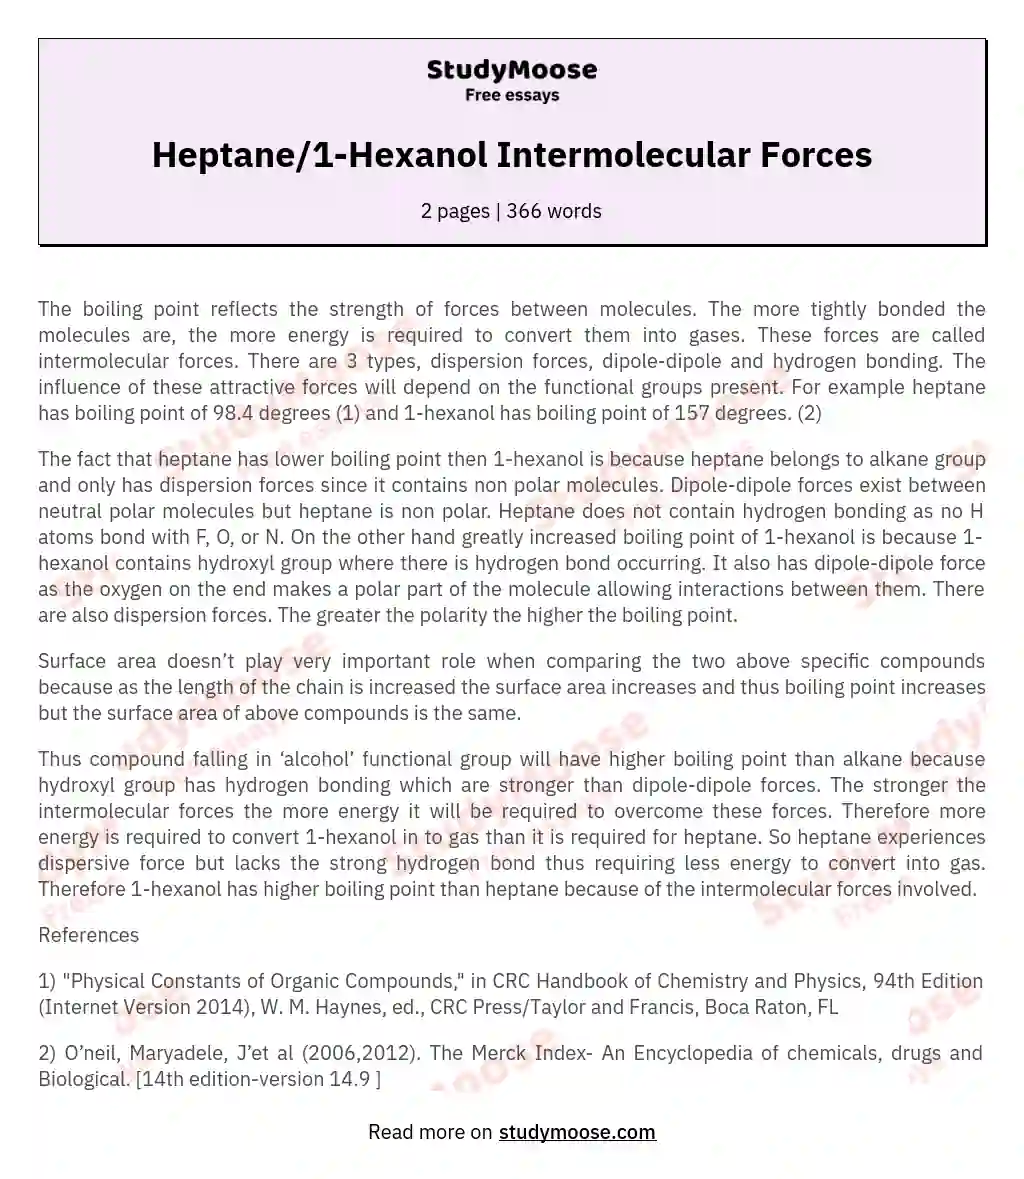 Heptane/1-Hexanol Intermolecular Forces essay